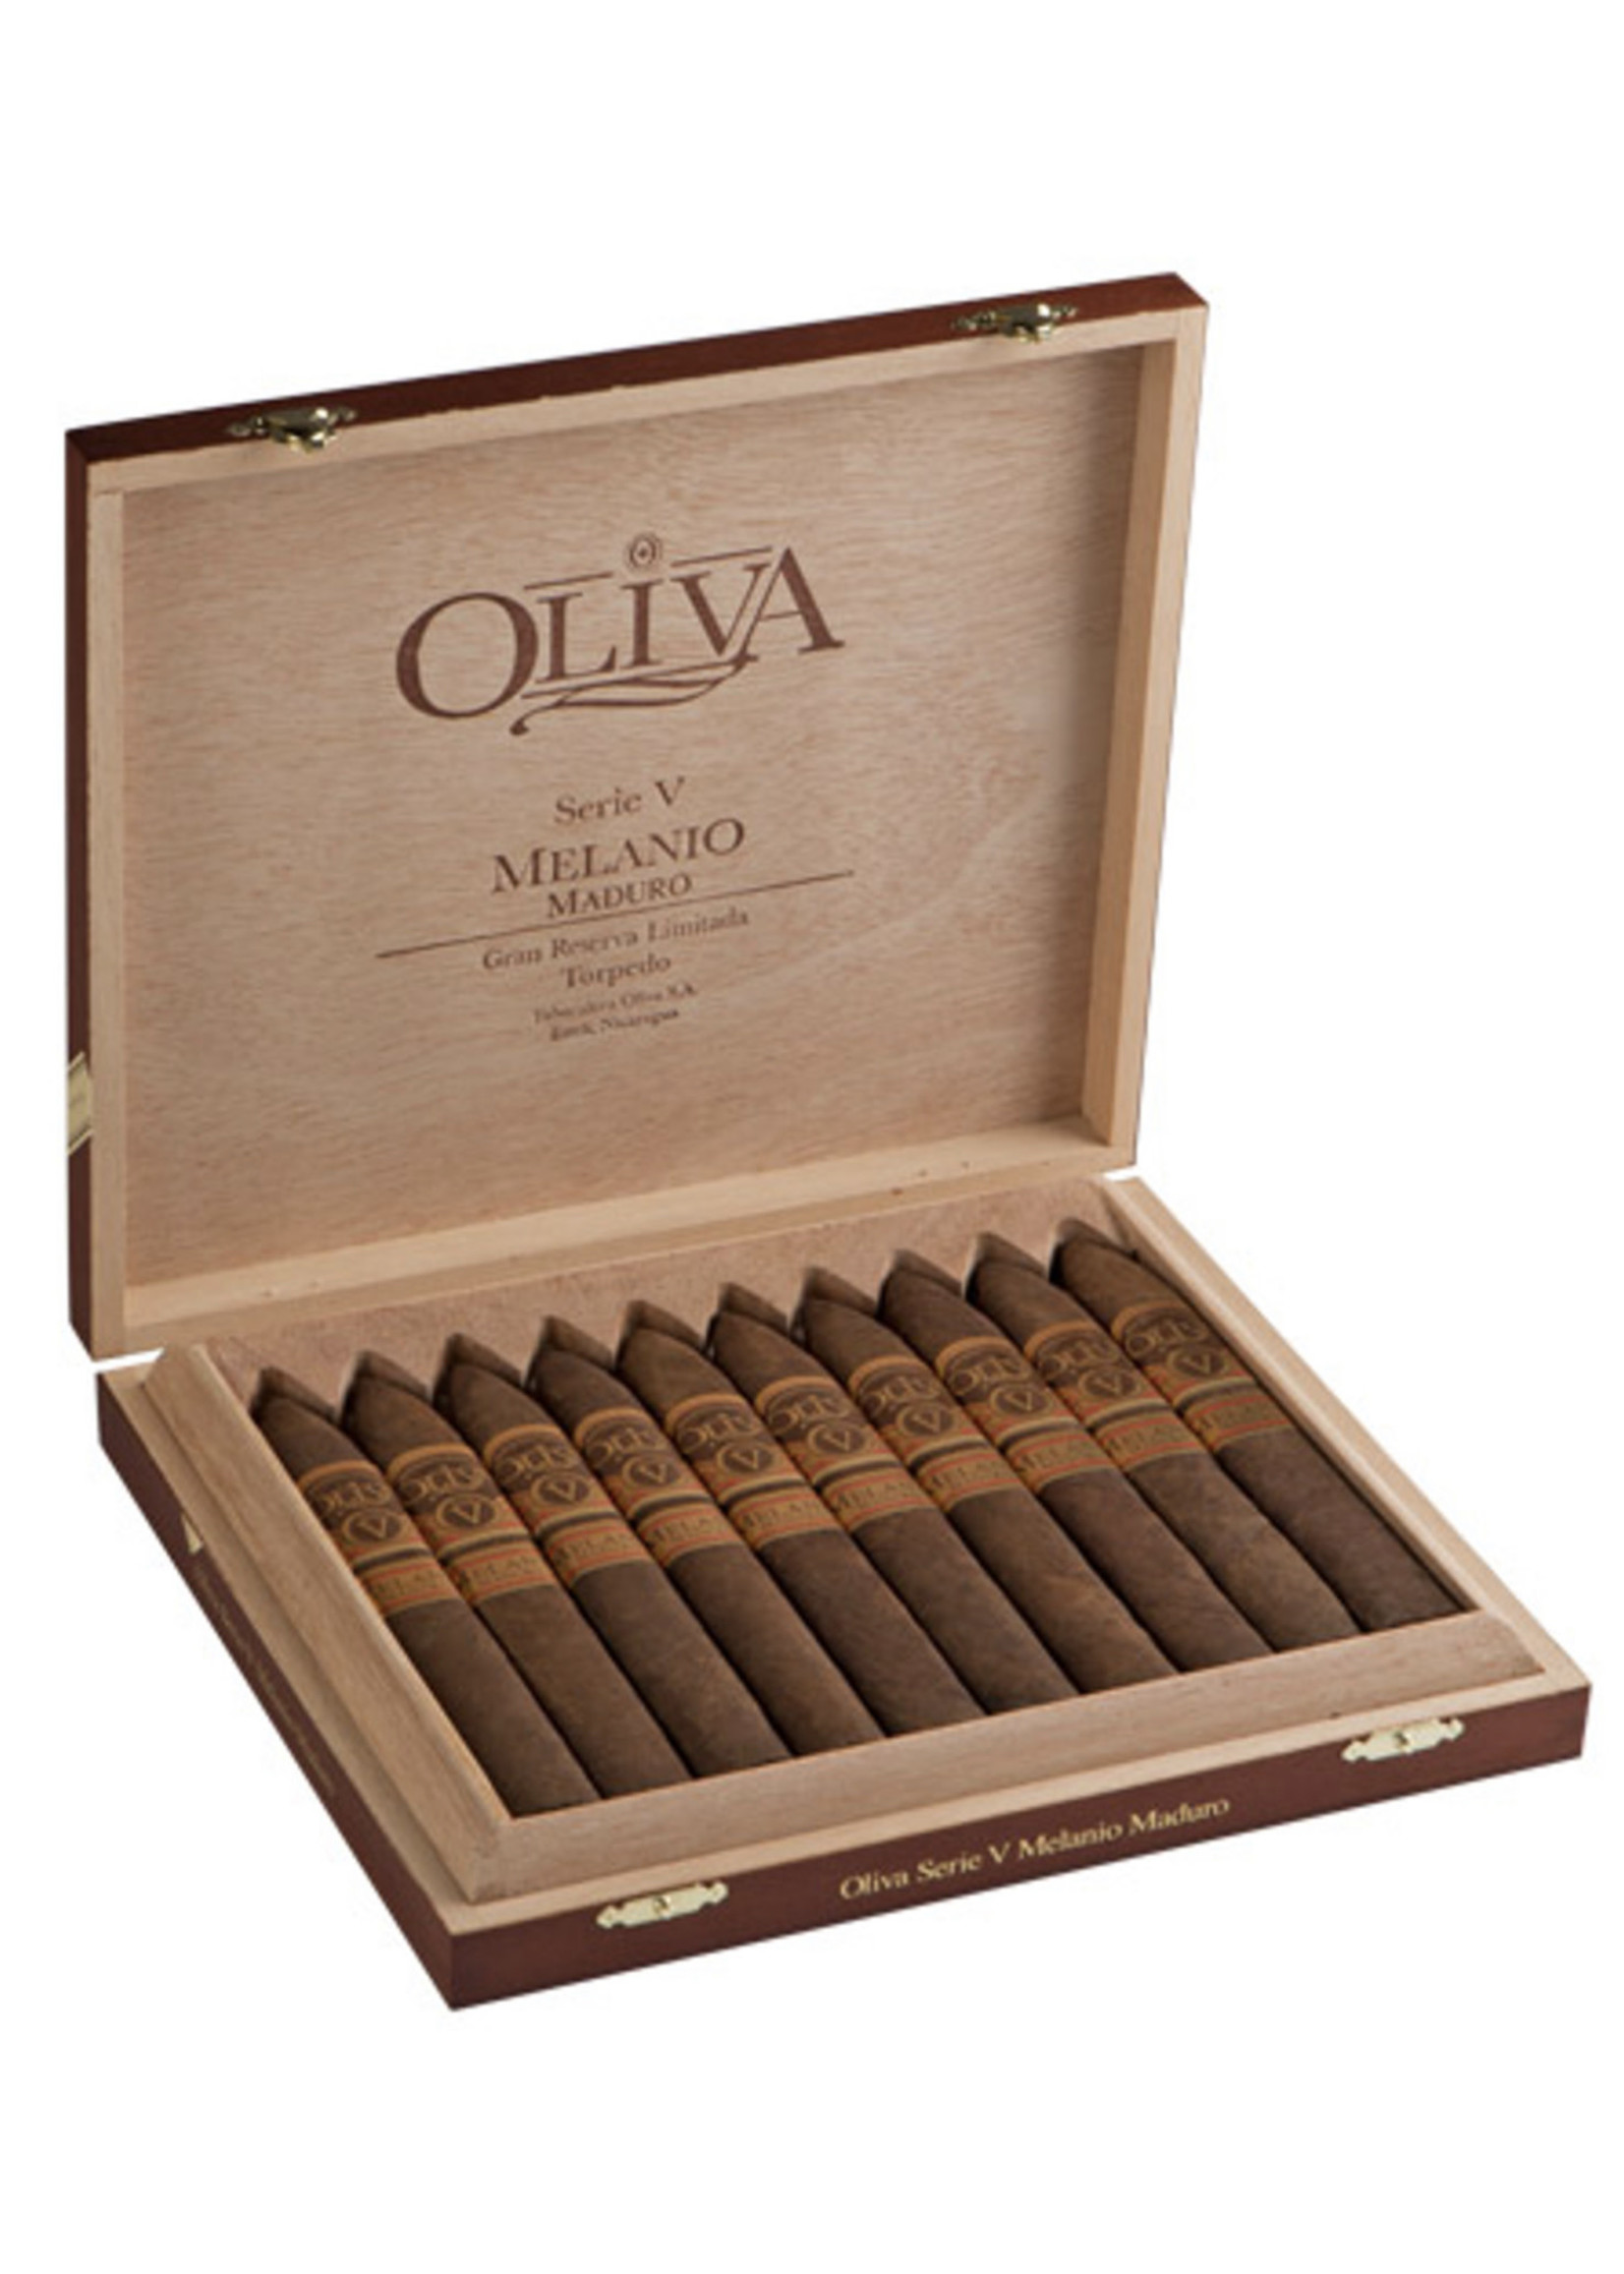 Oliva Oliva Serie 'V' Melanio - 6.5x54  Figurado